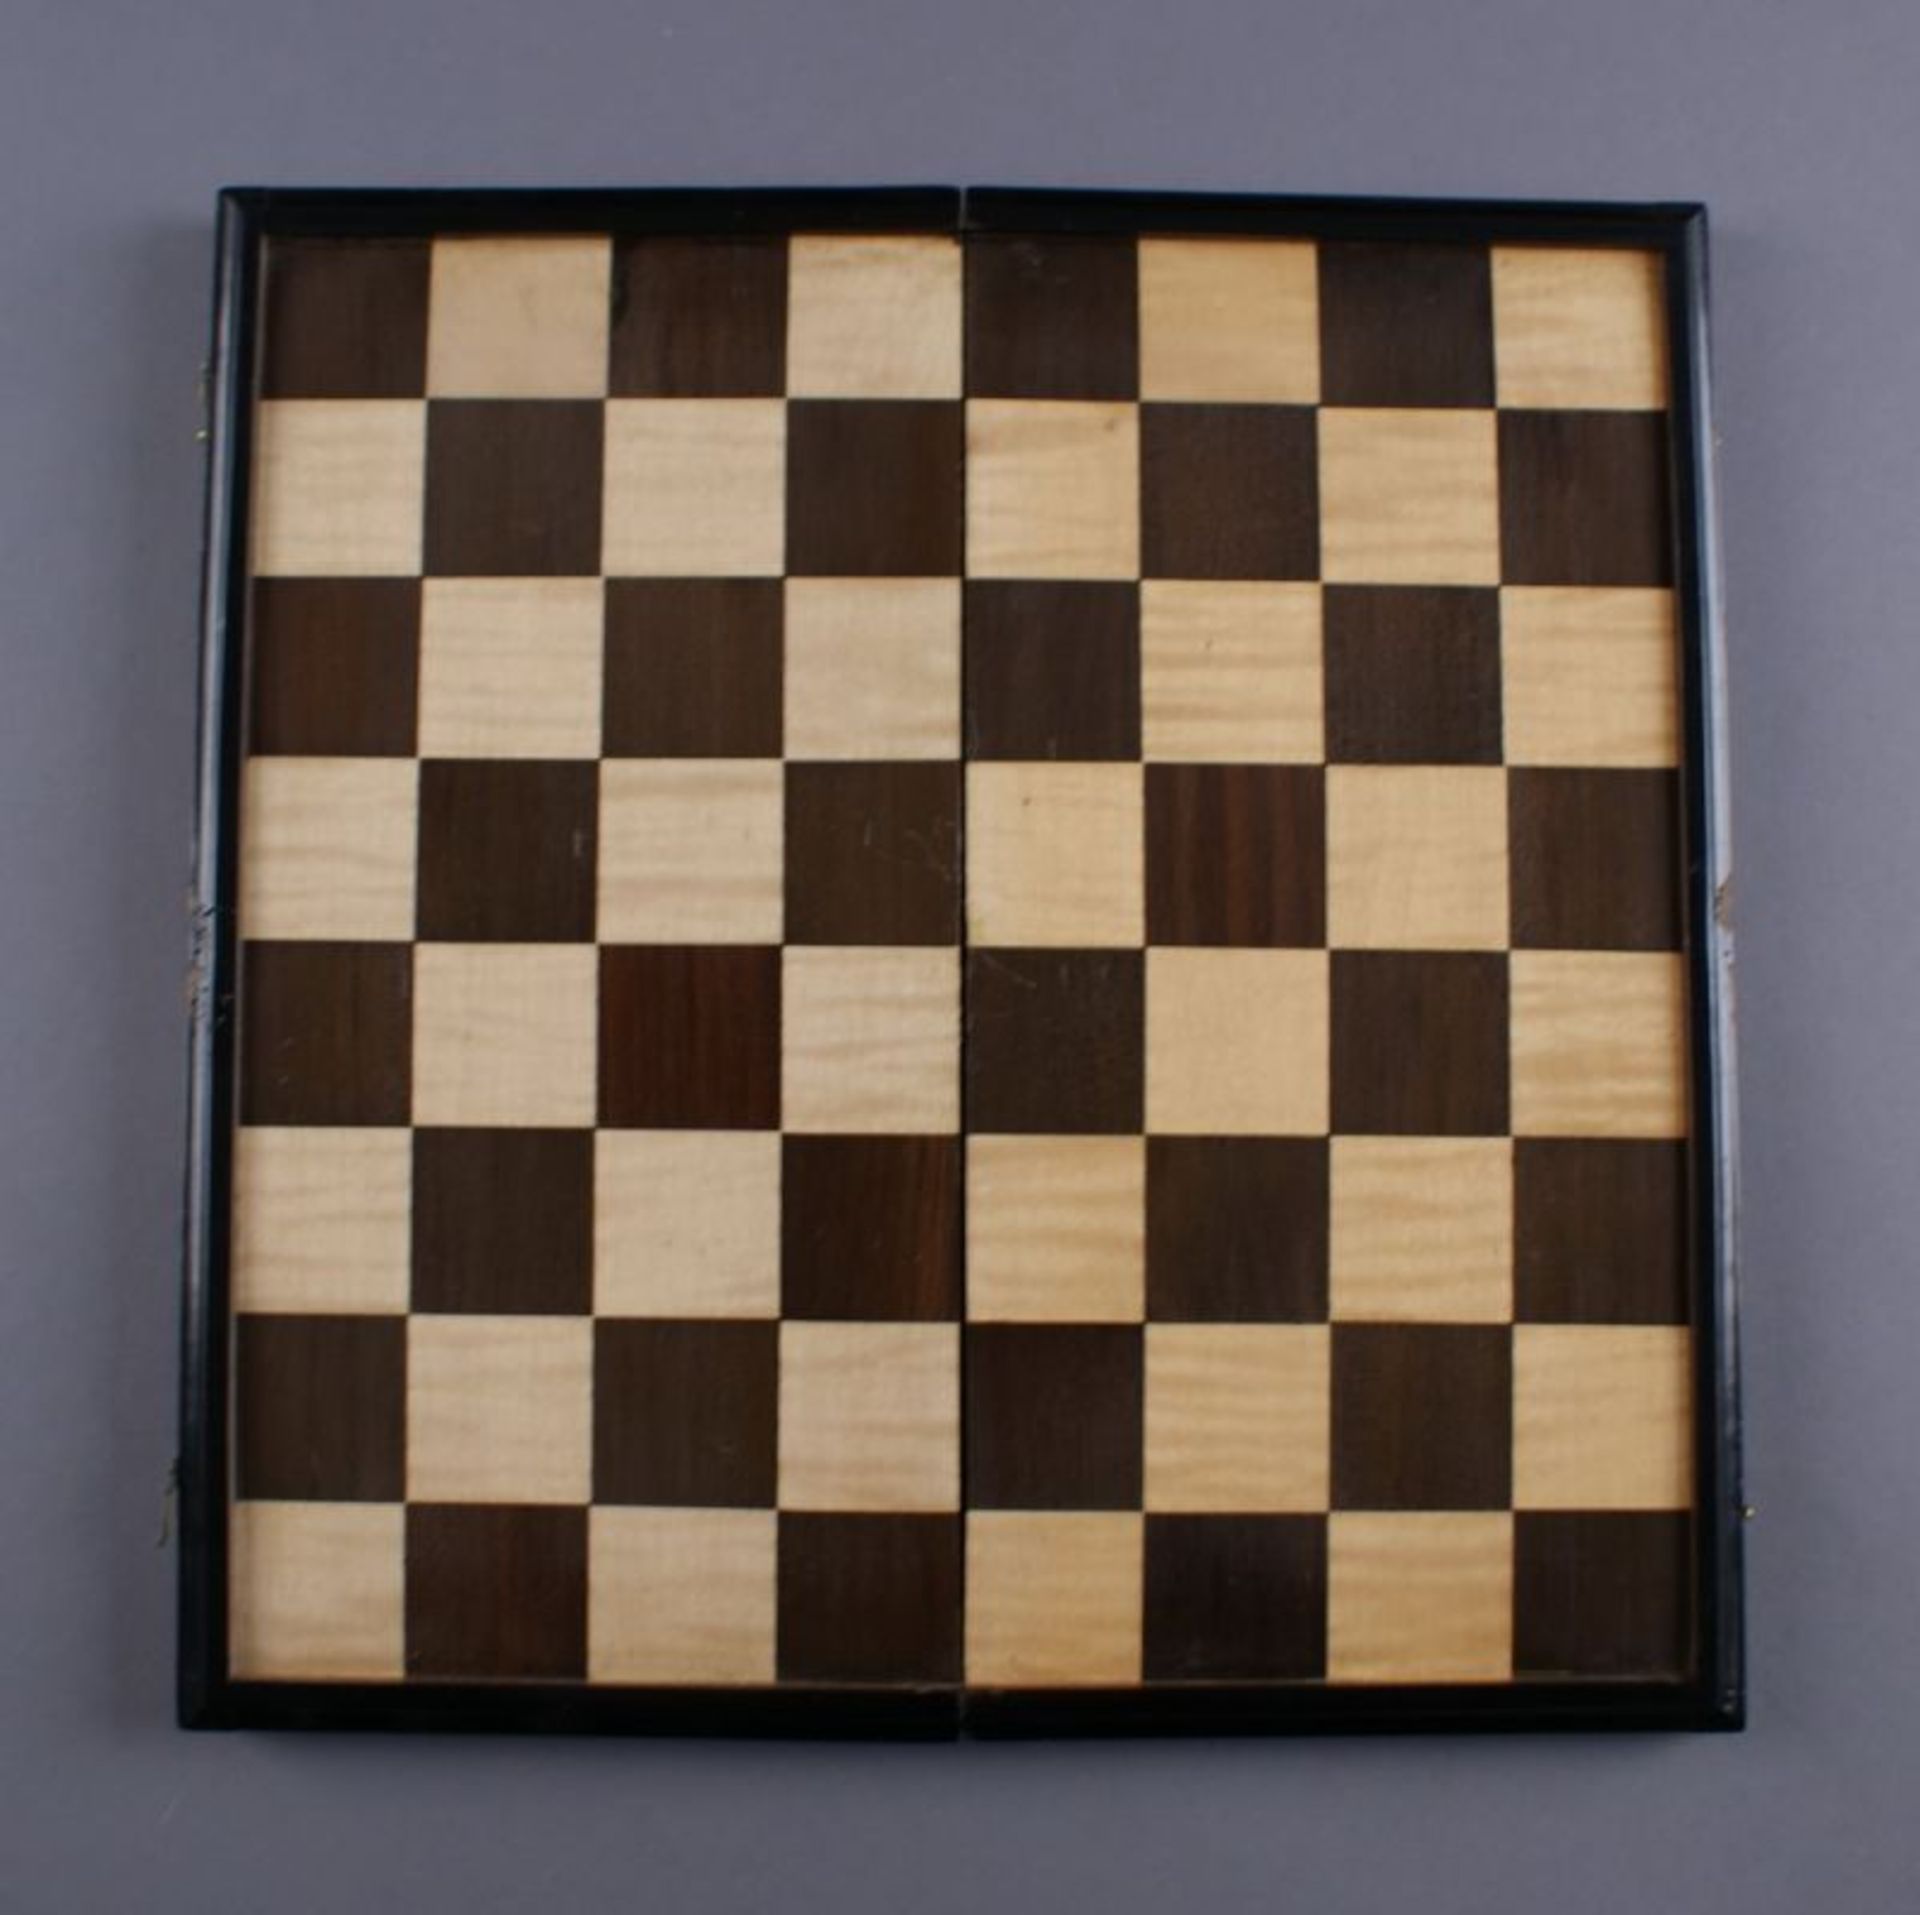 SPIELKOFFER / SCHATULLE 19. JH, aufklappbar mit Schachbrett, Bein-Schachfiguren, Spielmünzen und - Bild 4 aus 12